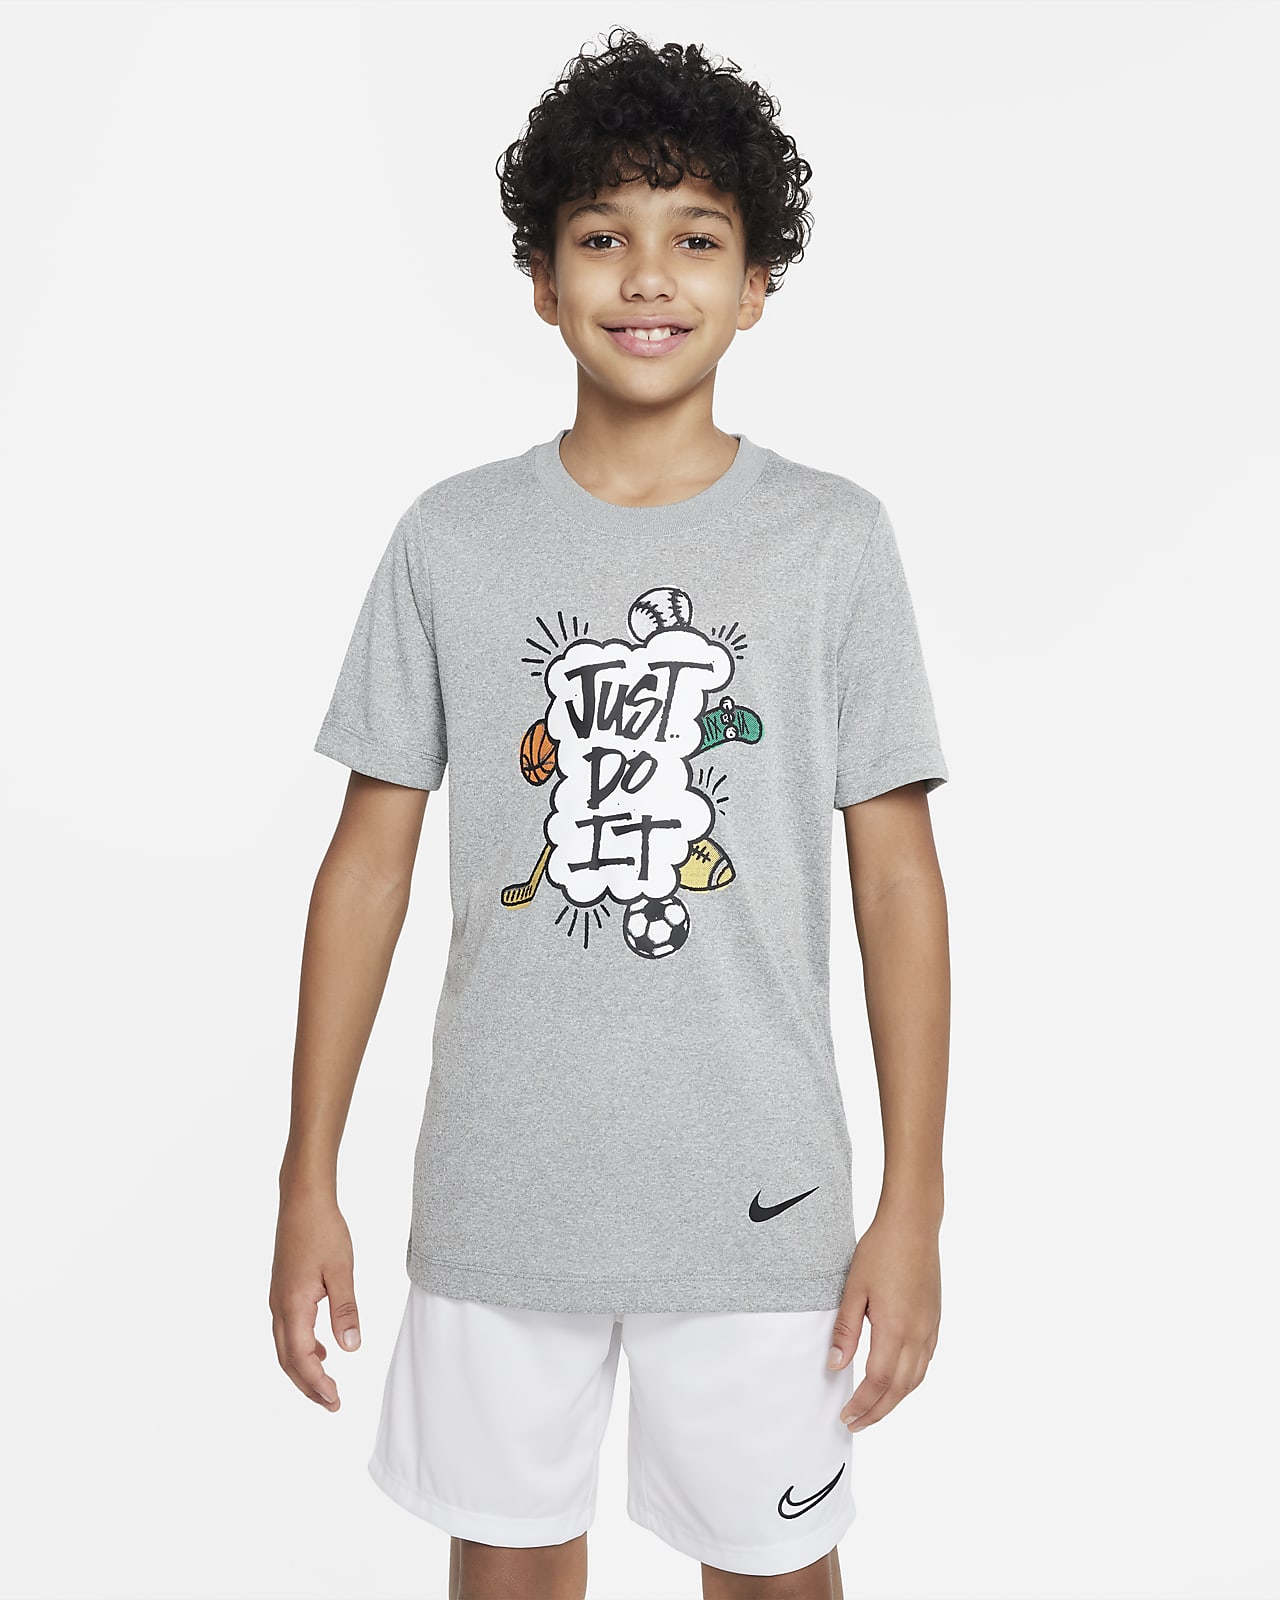 Nike større børn (drenge). DK